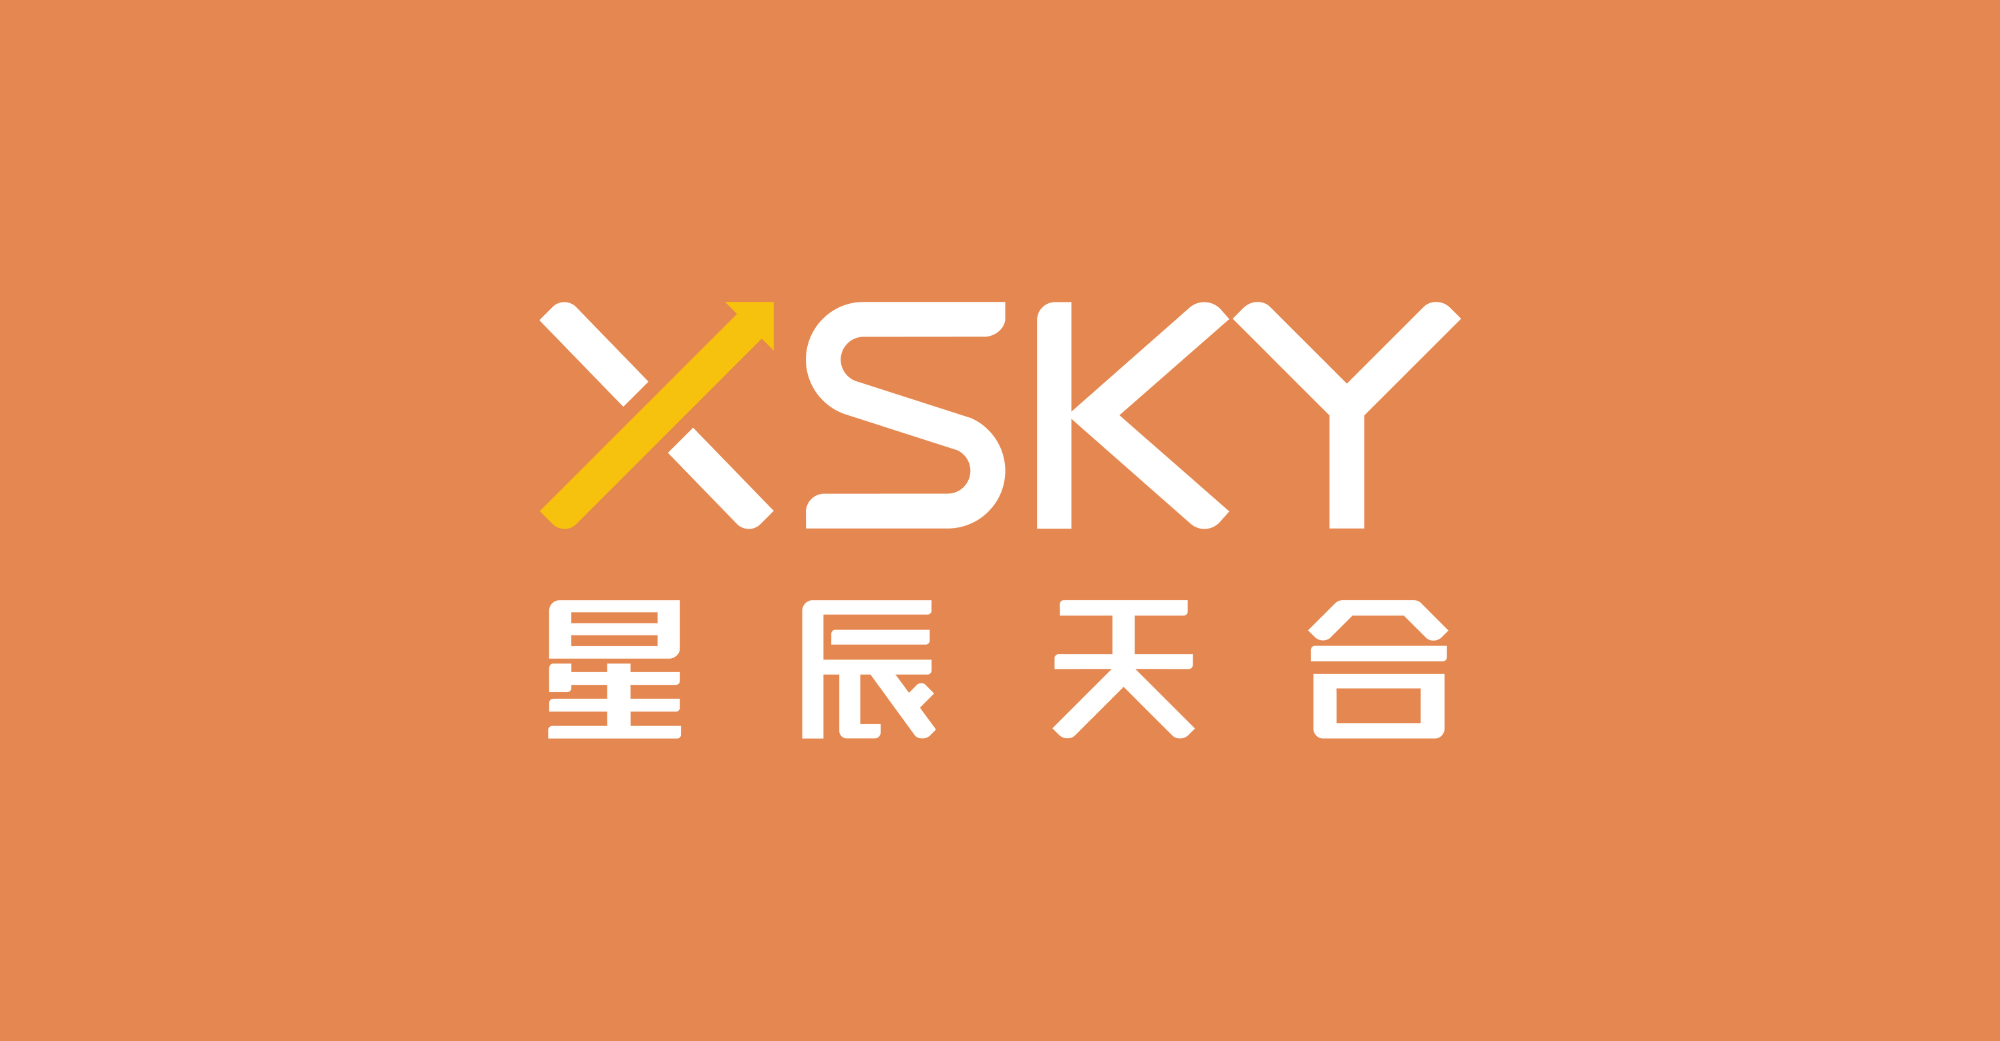 XSky ਨੂੰ $62.8 ਮਿਲੀਅਨ ਡਾਲਰ ਦੀ ਵਿੱਤੀ ਸਹਾਇਤਾ ਪ੍ਰਾਪਤ ਹੋਈ, ਅਤੇ ਸਰੋਤ ਕੋਡ ਕੈਪੀਟਲ ਨੇ ਨਿਵੇਸ਼ ਵਿੱਚ ਹਿੱਸਾ ਲਿਆ